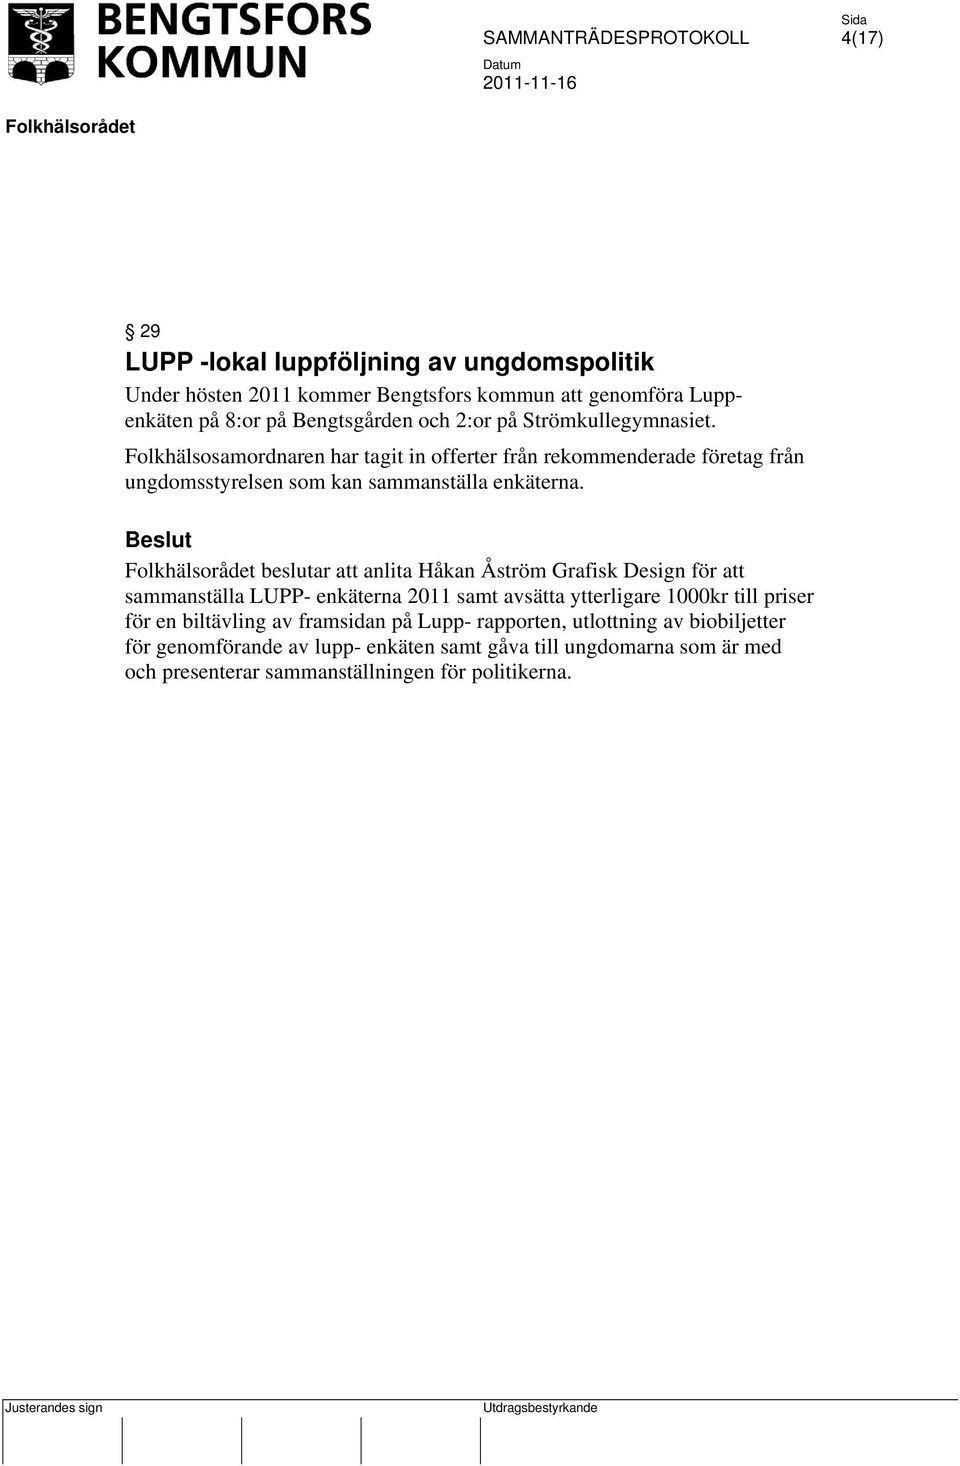 beslutar att anlita Håkan Åström Grafisk Design för att sammanställa LUPP- enkäterna 2011 samt avsätta ytterligare 1000kr till priser för en biltävling av